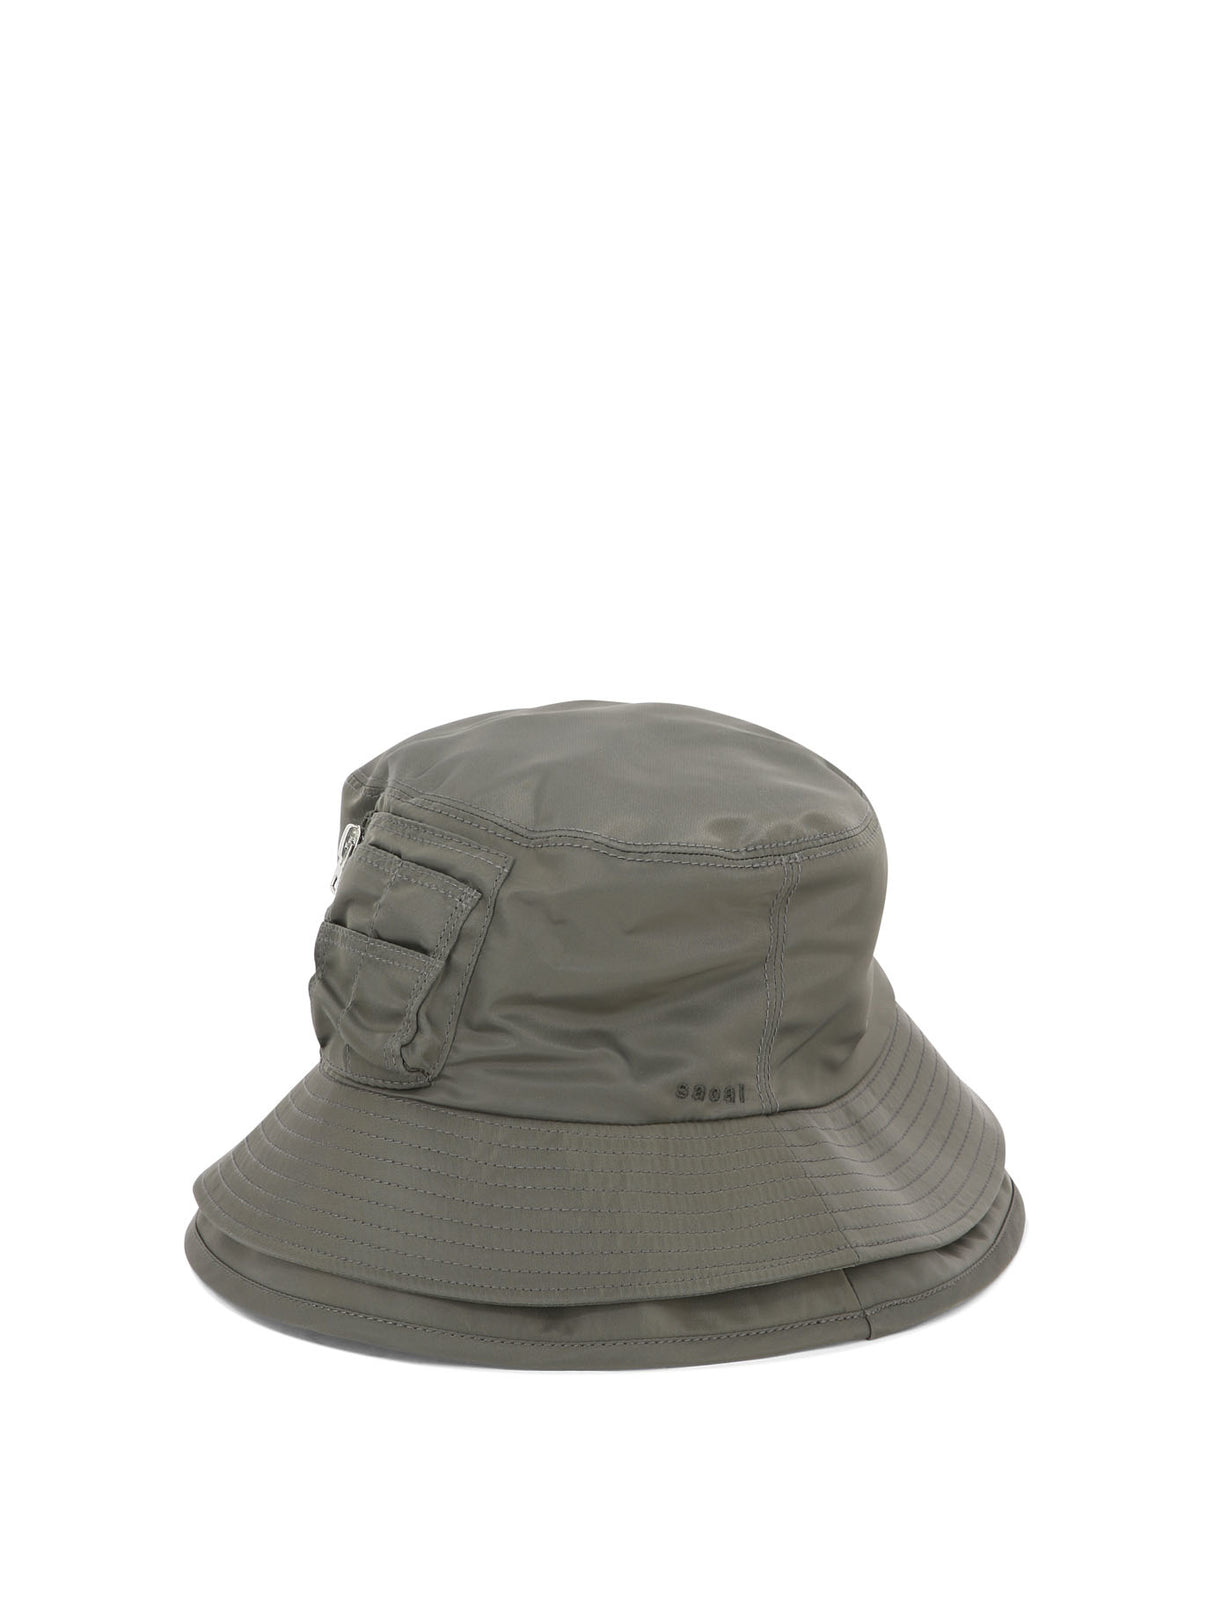 Mũ nón xếp rộng dành cho nam màu xanh lá với túi khoá kéo và logo thêu